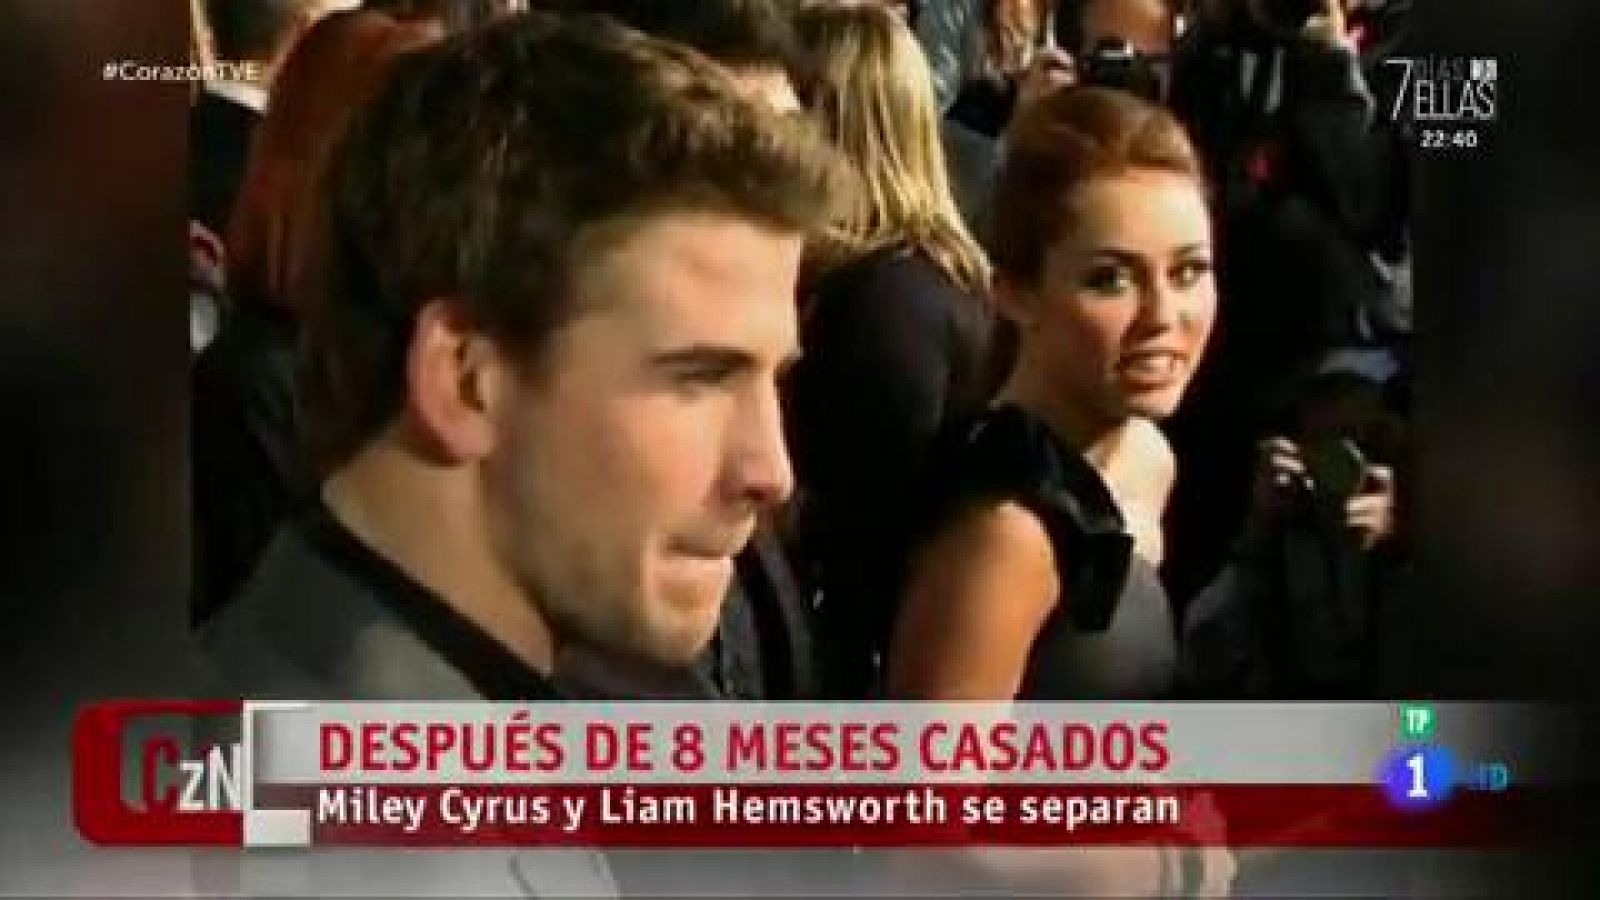 Miley Cyrus y Liam Hemsworth se separan después de ocho meses casados 